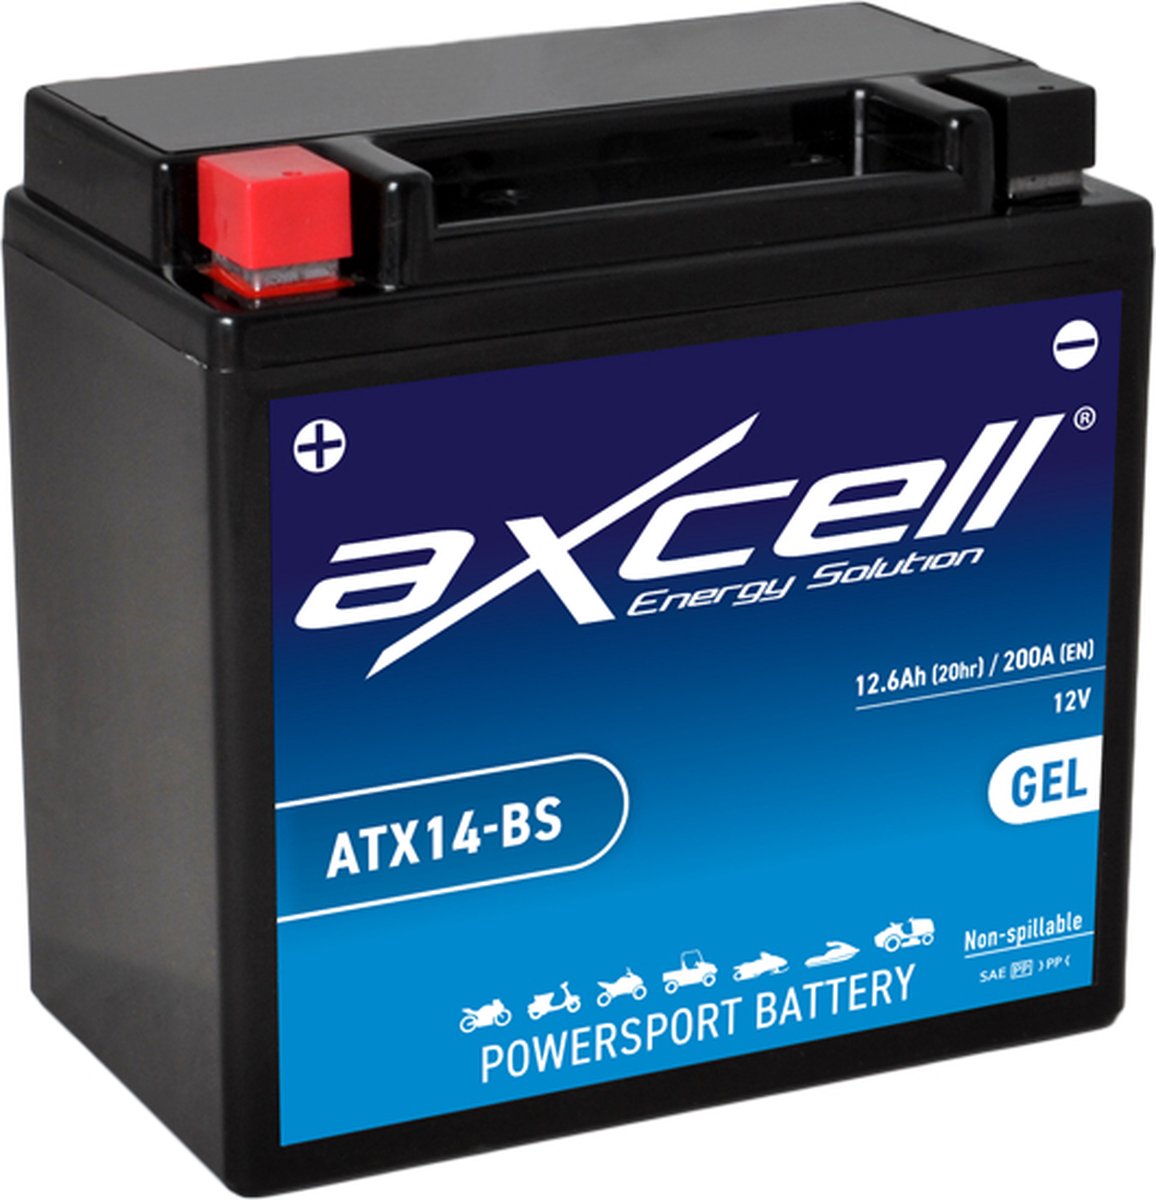 Axcell Powersport Battery ATX14-BS GEL accu 12 Volt 12.6Ah